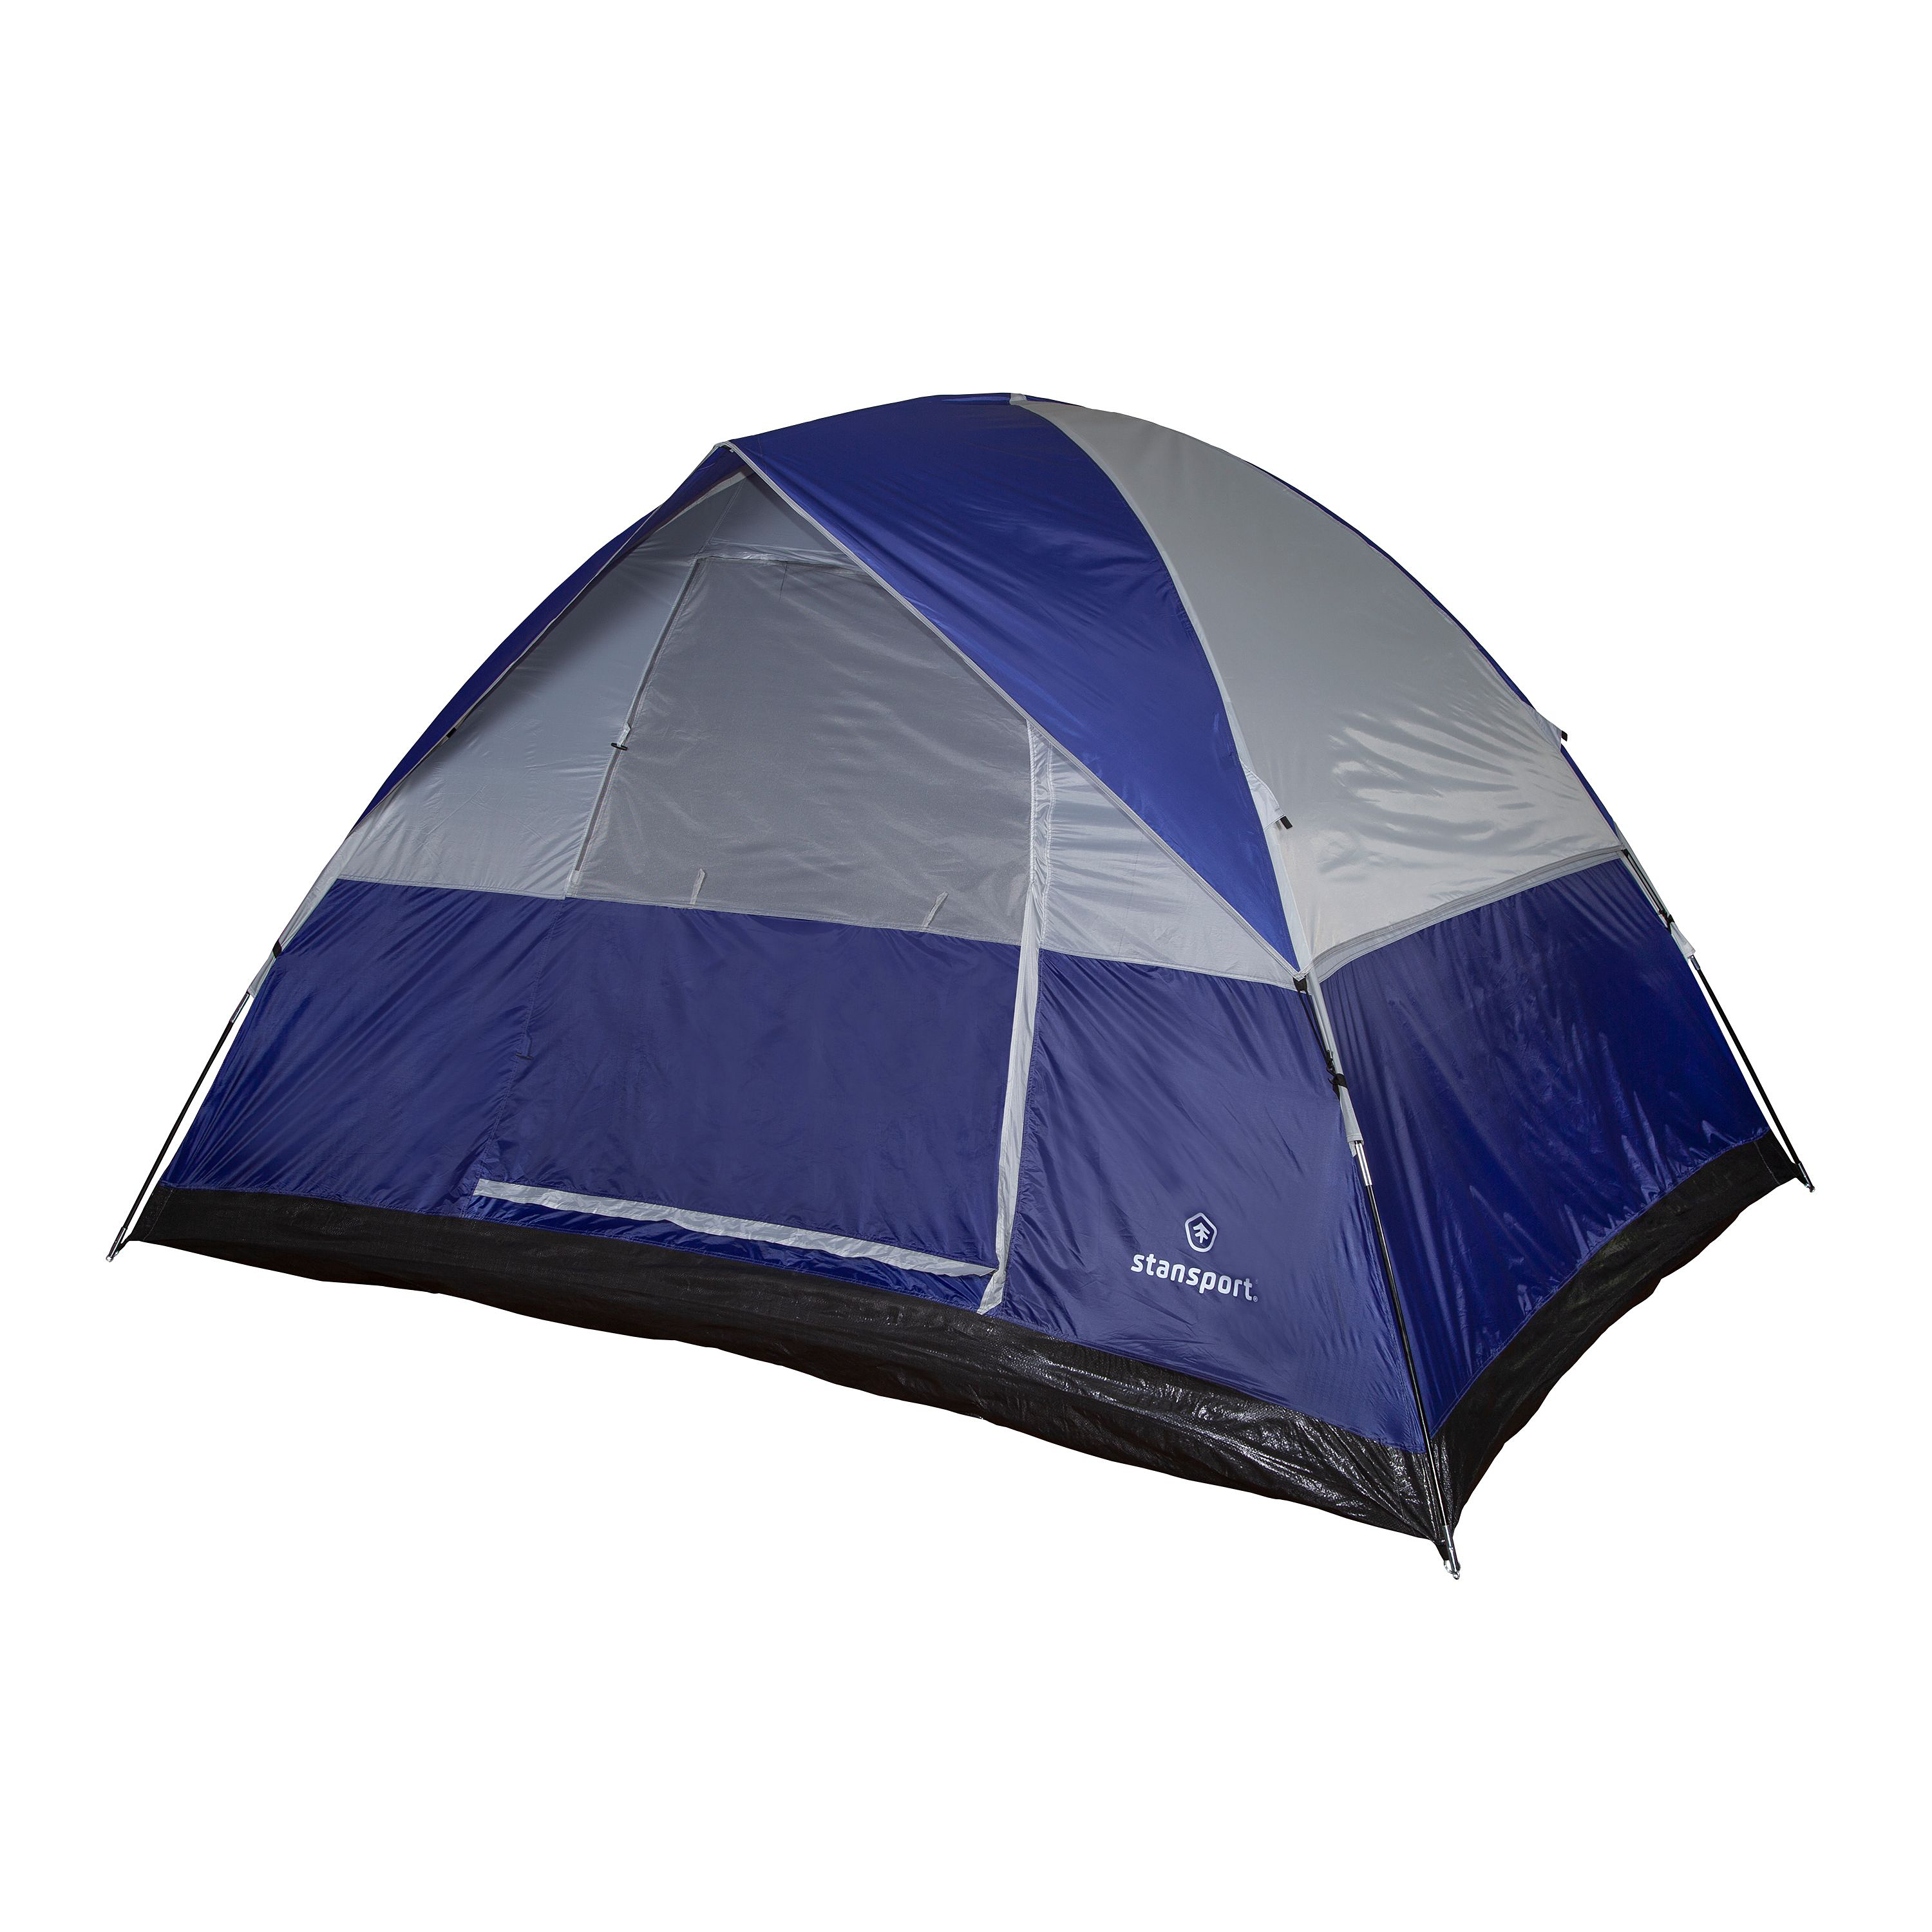 Stansport Teton 6-Person Dome Tent